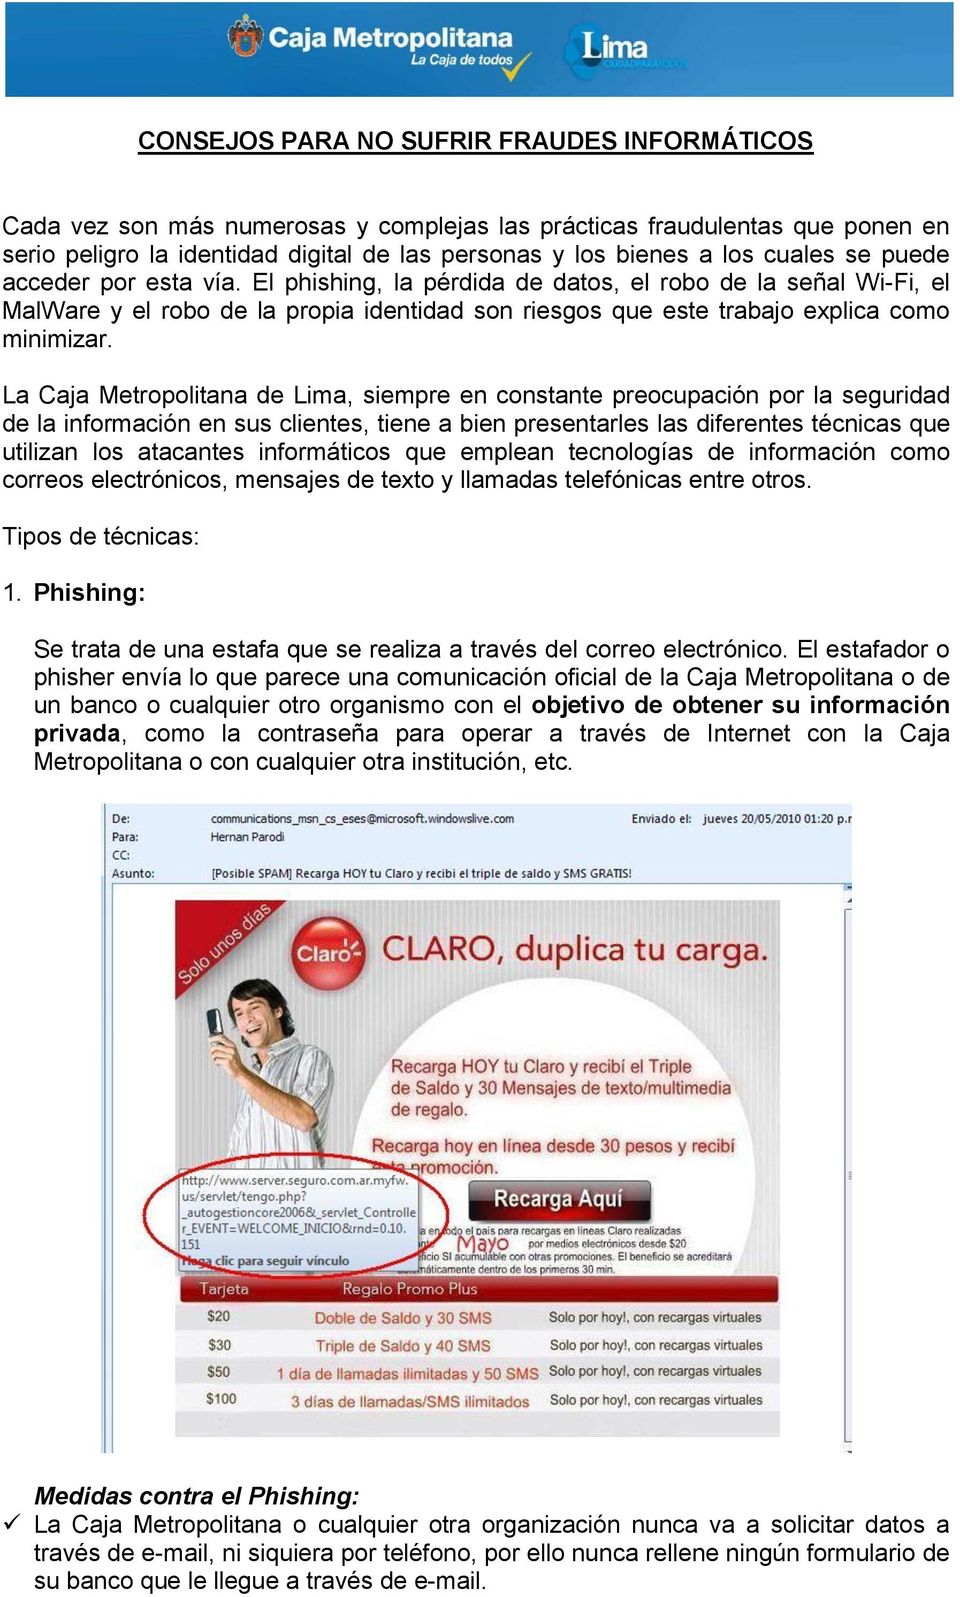 La Caja Metropolitana de Lima, siempre en constante preocupación por la seguridad de la información en sus clientes, tiene a bien presentarles las diferentes técnicas que utilizan los atacantes